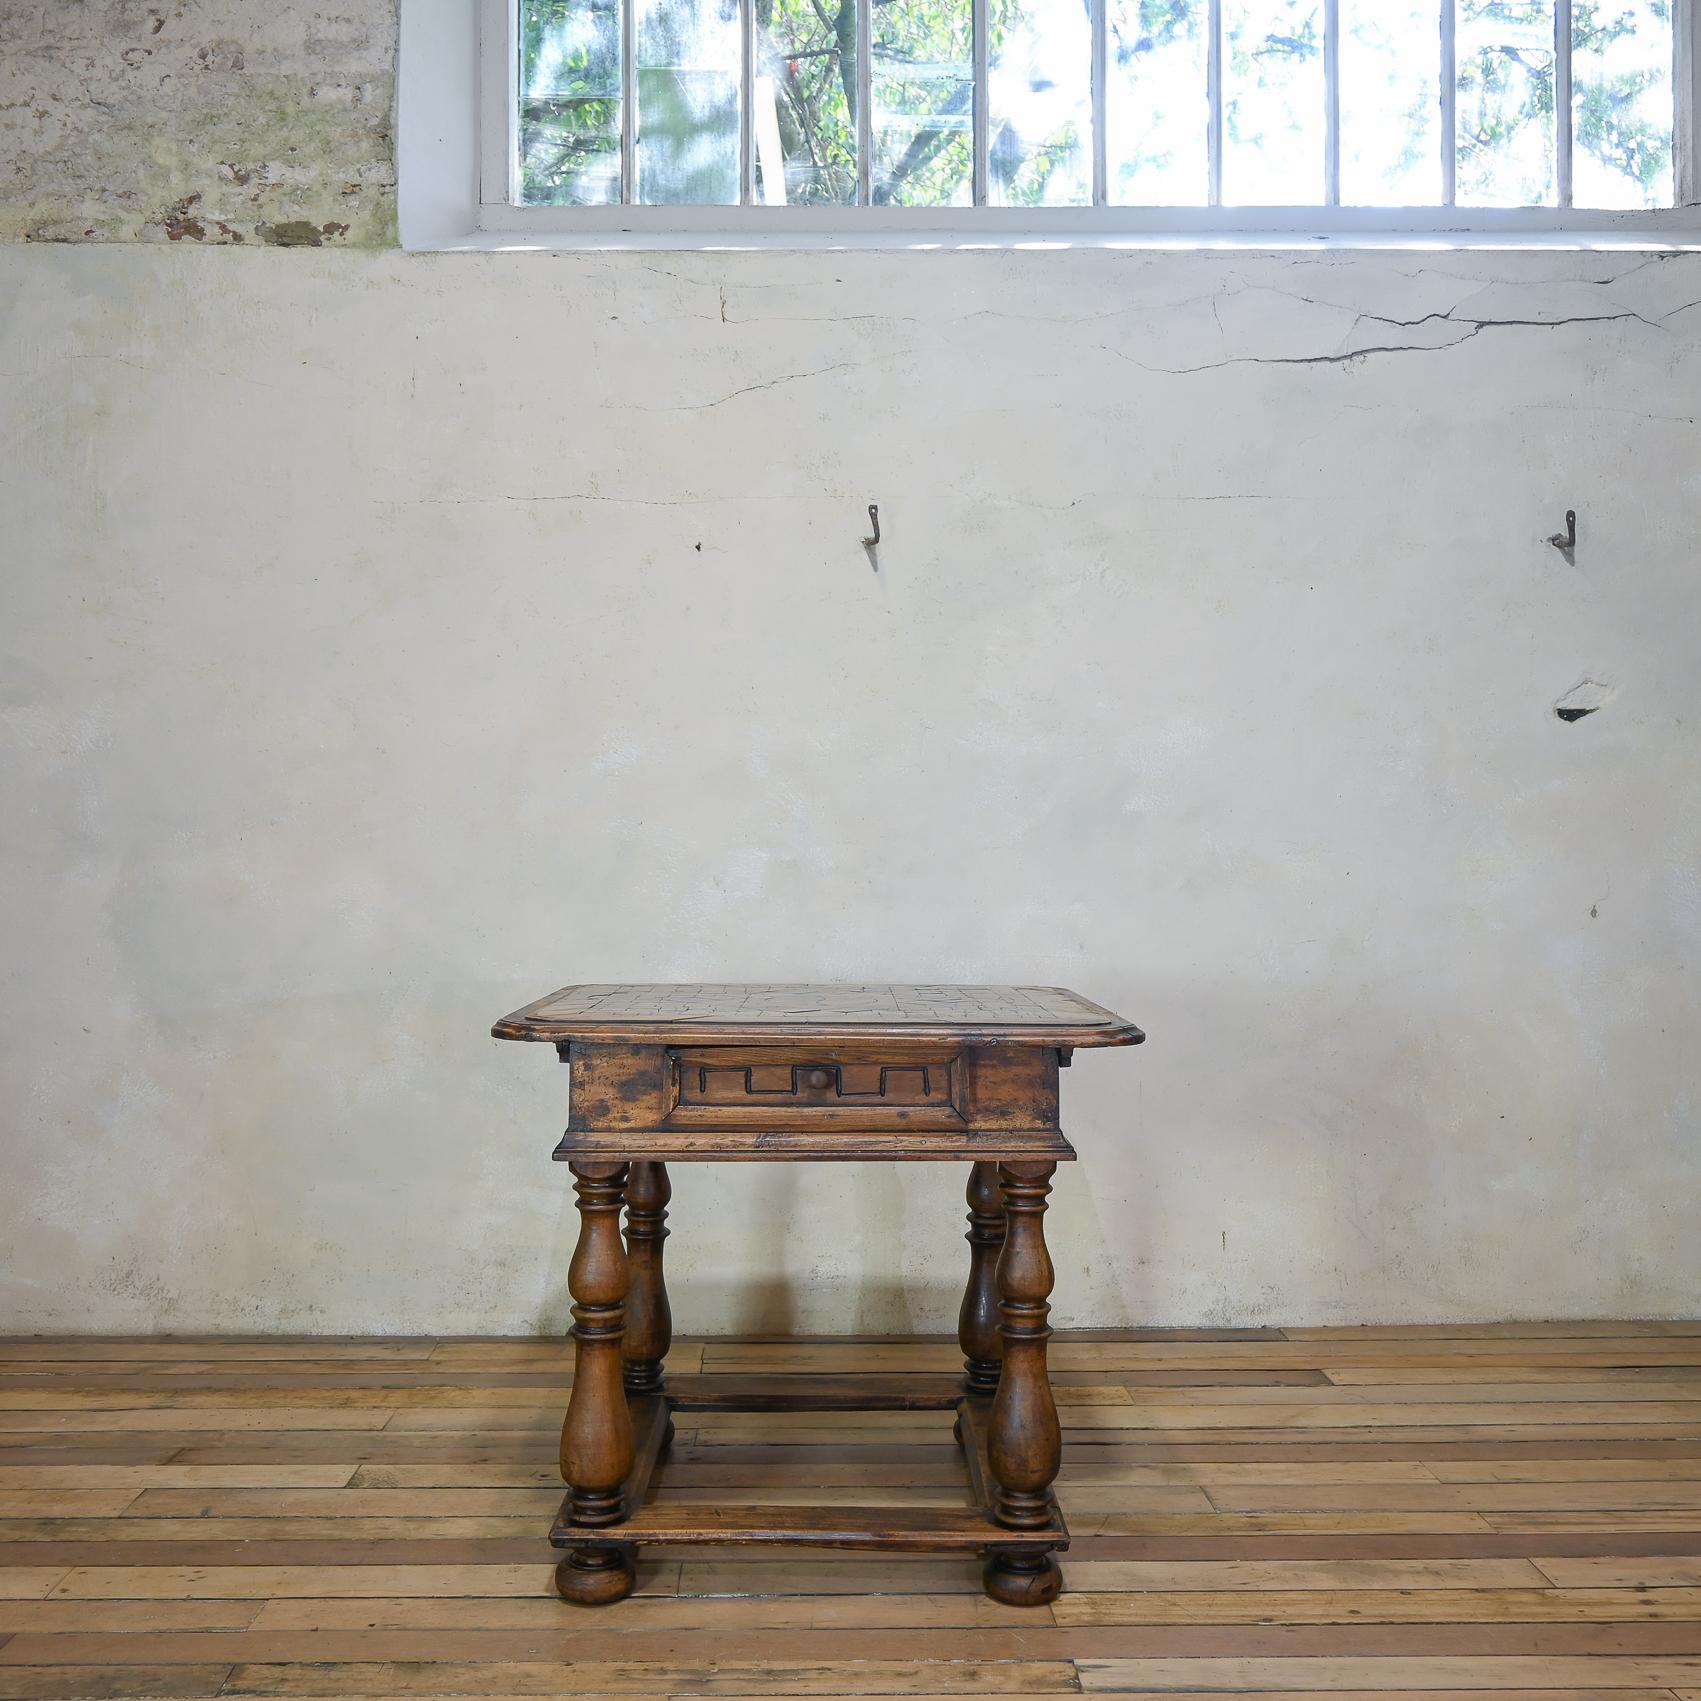 Ein charmanter Nussbaum-Mitteltisch aus dem 18. Jahrhundert in italienischer Provinzialität. Er steht auf vier gedrechselten Balustradenbeinen, die auf gedrungenen Füßen enden, die mit einer eleganten umlaufenden Bahre verbunden sind.
Dieser Tisch